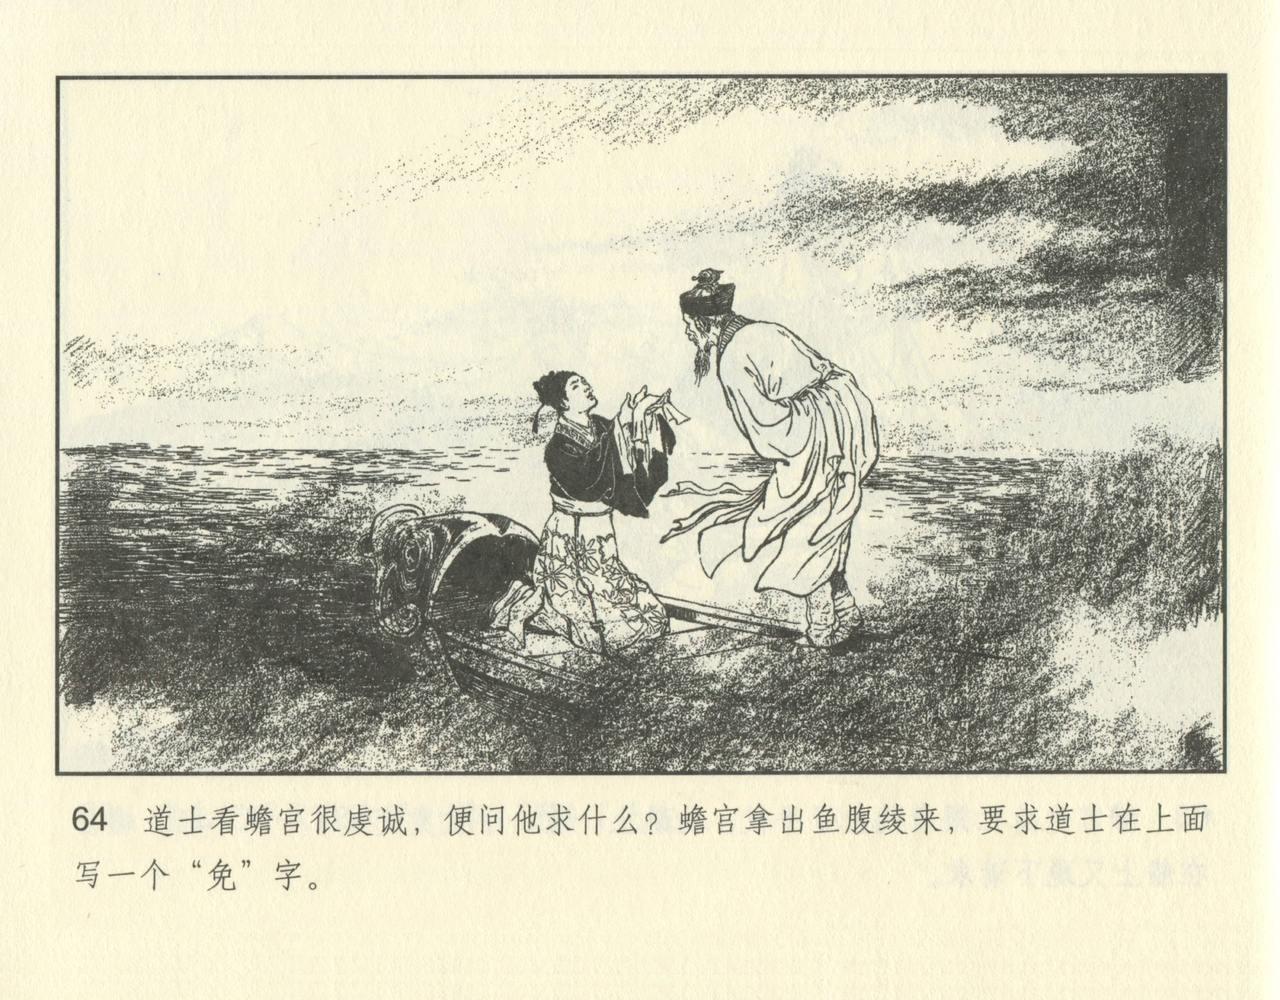 聊斋志异 张玮等绘 天津人民美术出版社 卷二十一 ~ 三十 113